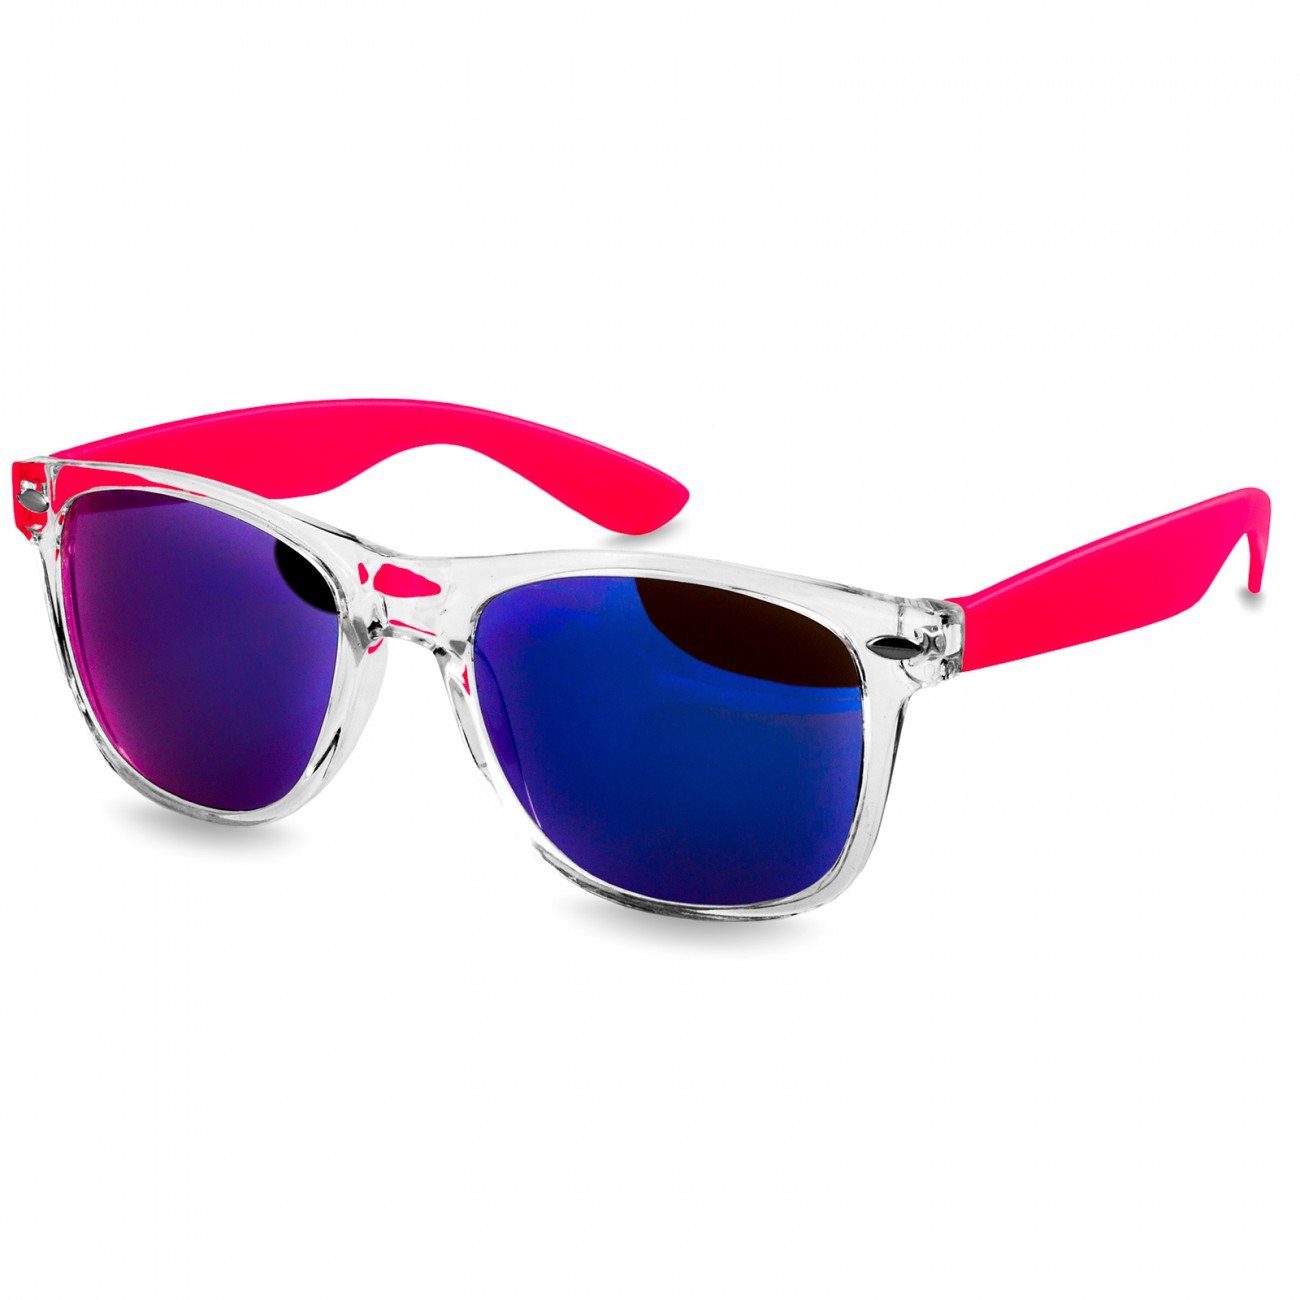 Caspar Sonnenbrille SG017 Damen RETRO Designbrille pink / blau verspiegelt